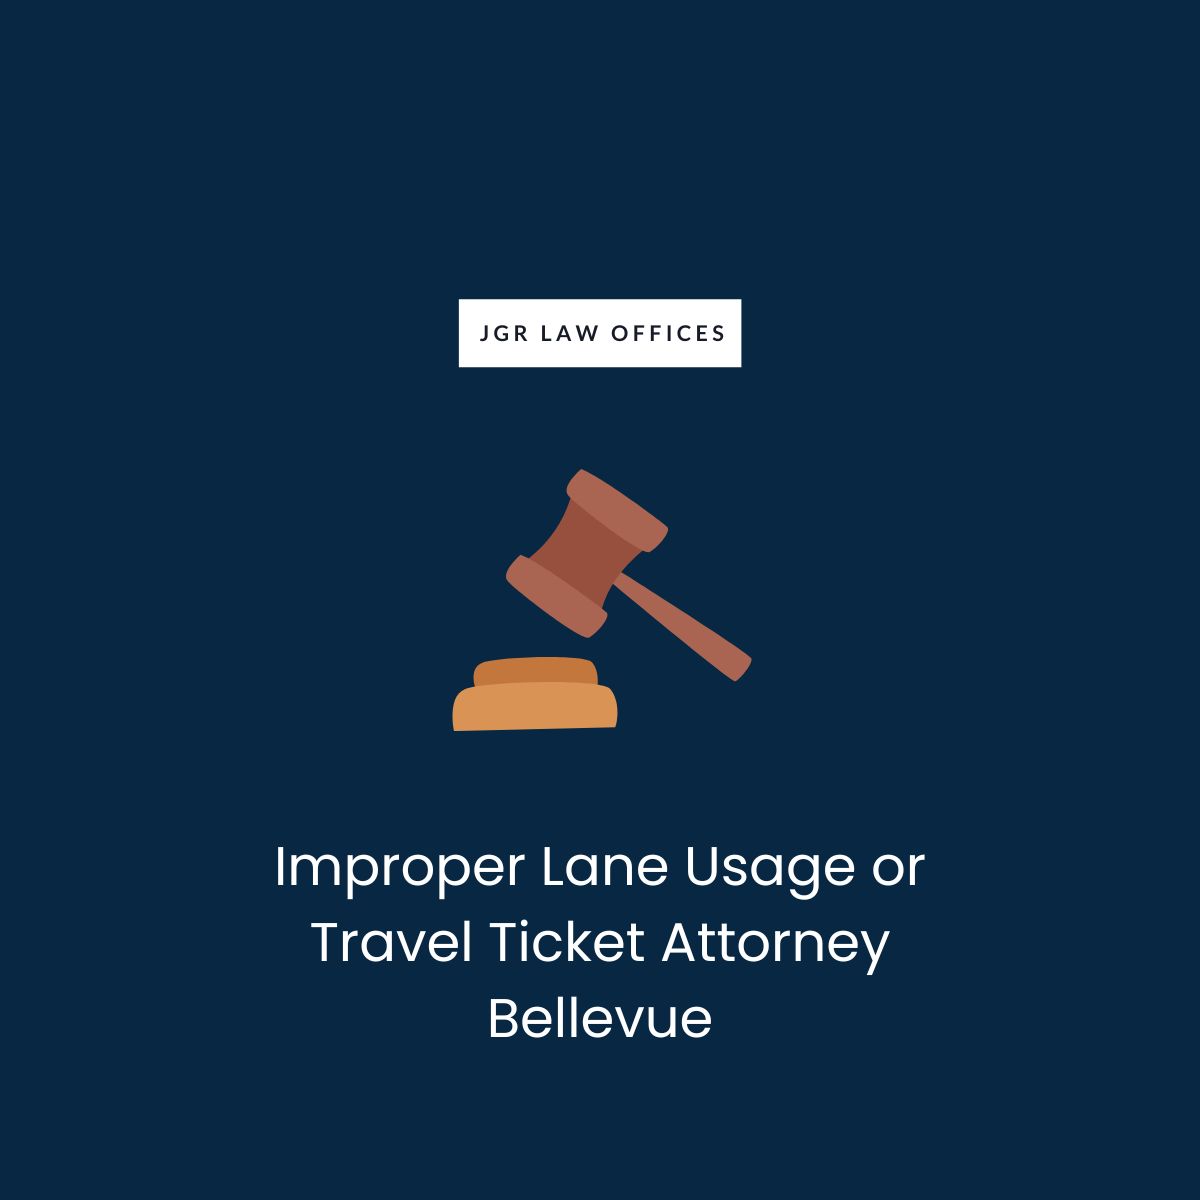 Improper Lane Usage or Travel Ticket Attorney Bellevue